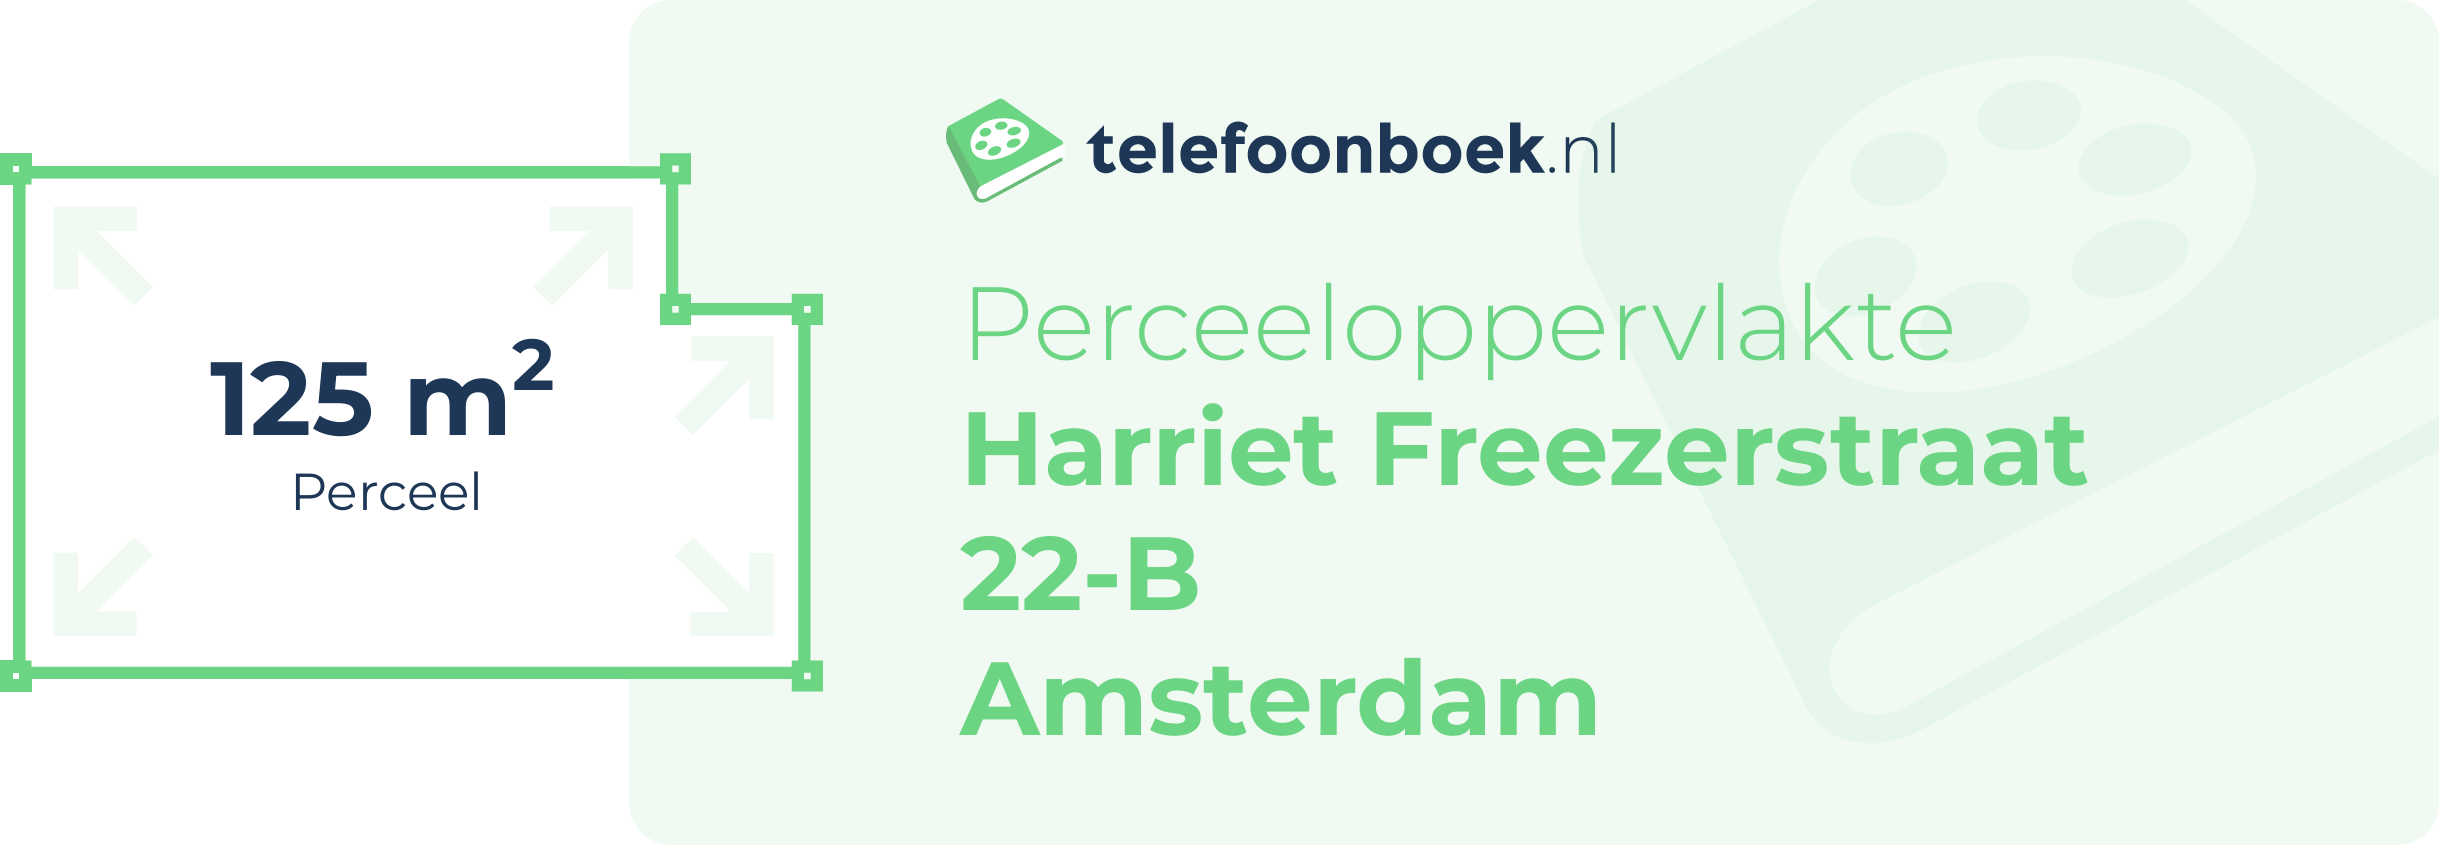 Perceeloppervlakte Harriet Freezerstraat 22-B Amsterdam